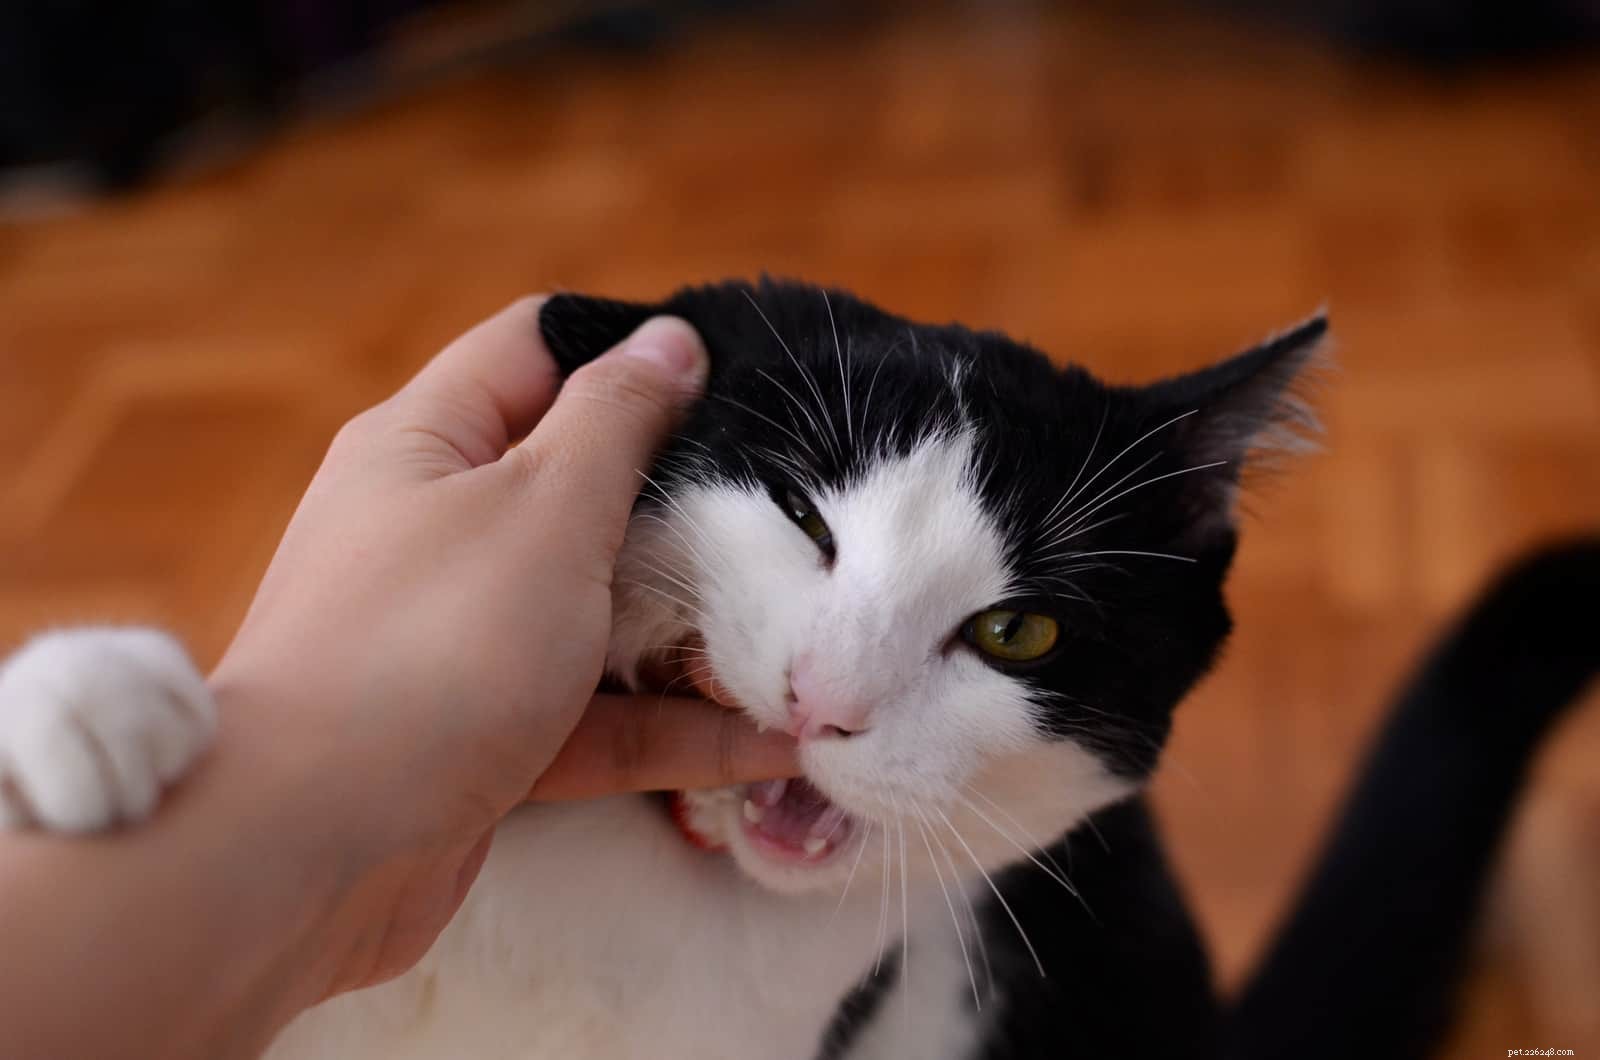 Varför biter min katt mig när jag klappar den?